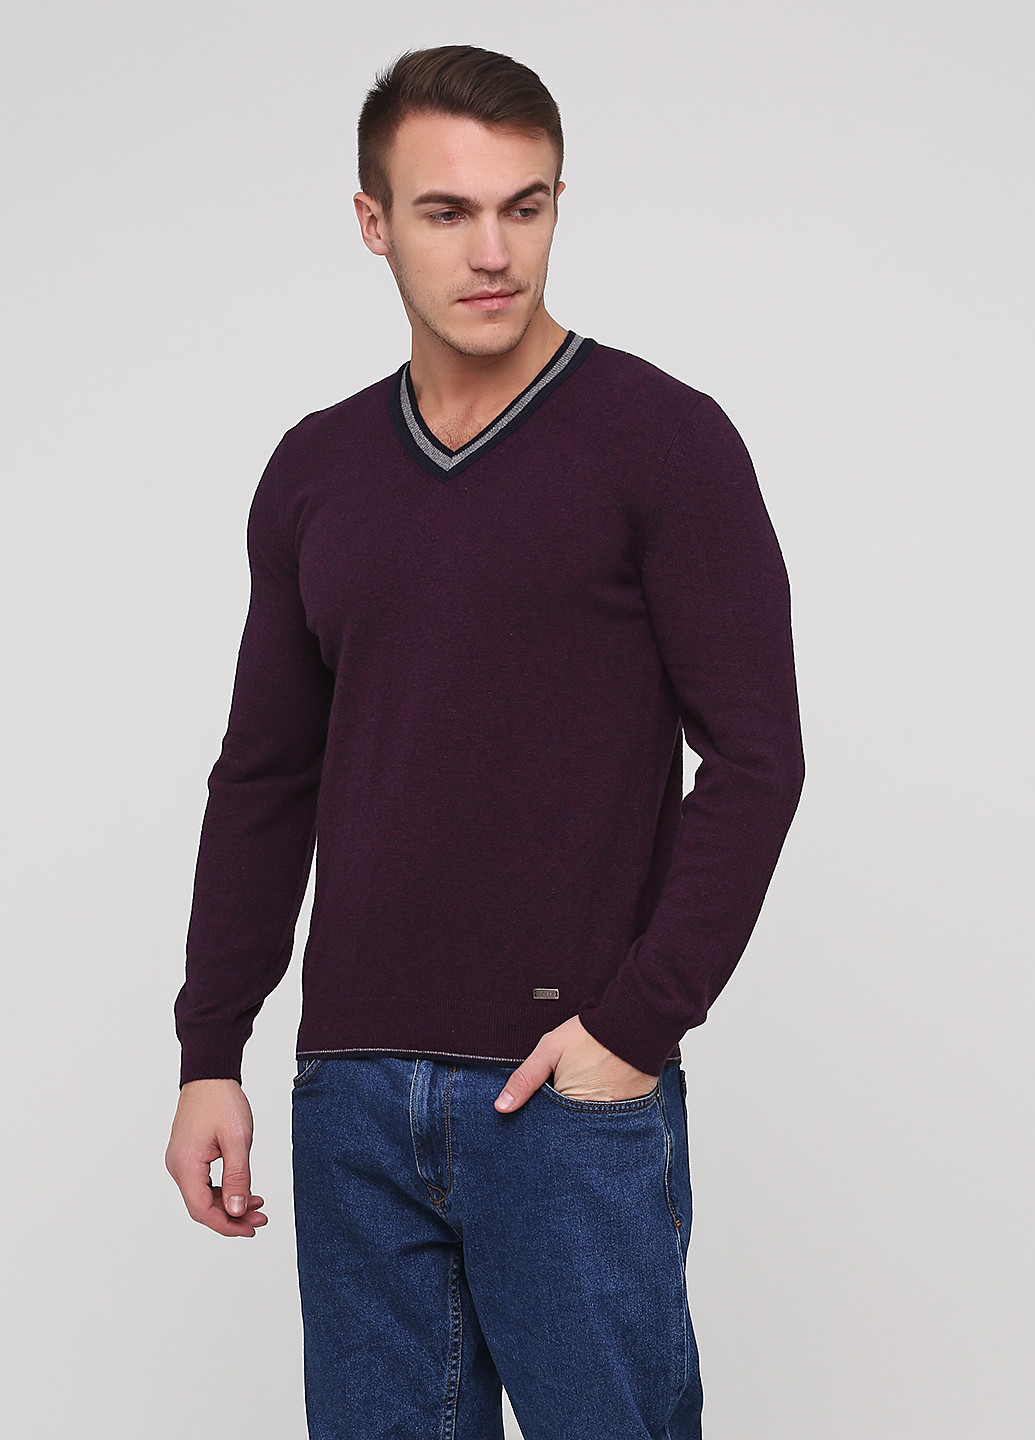 Сливовый демисезонный пуловер пуловер Hugo Boss